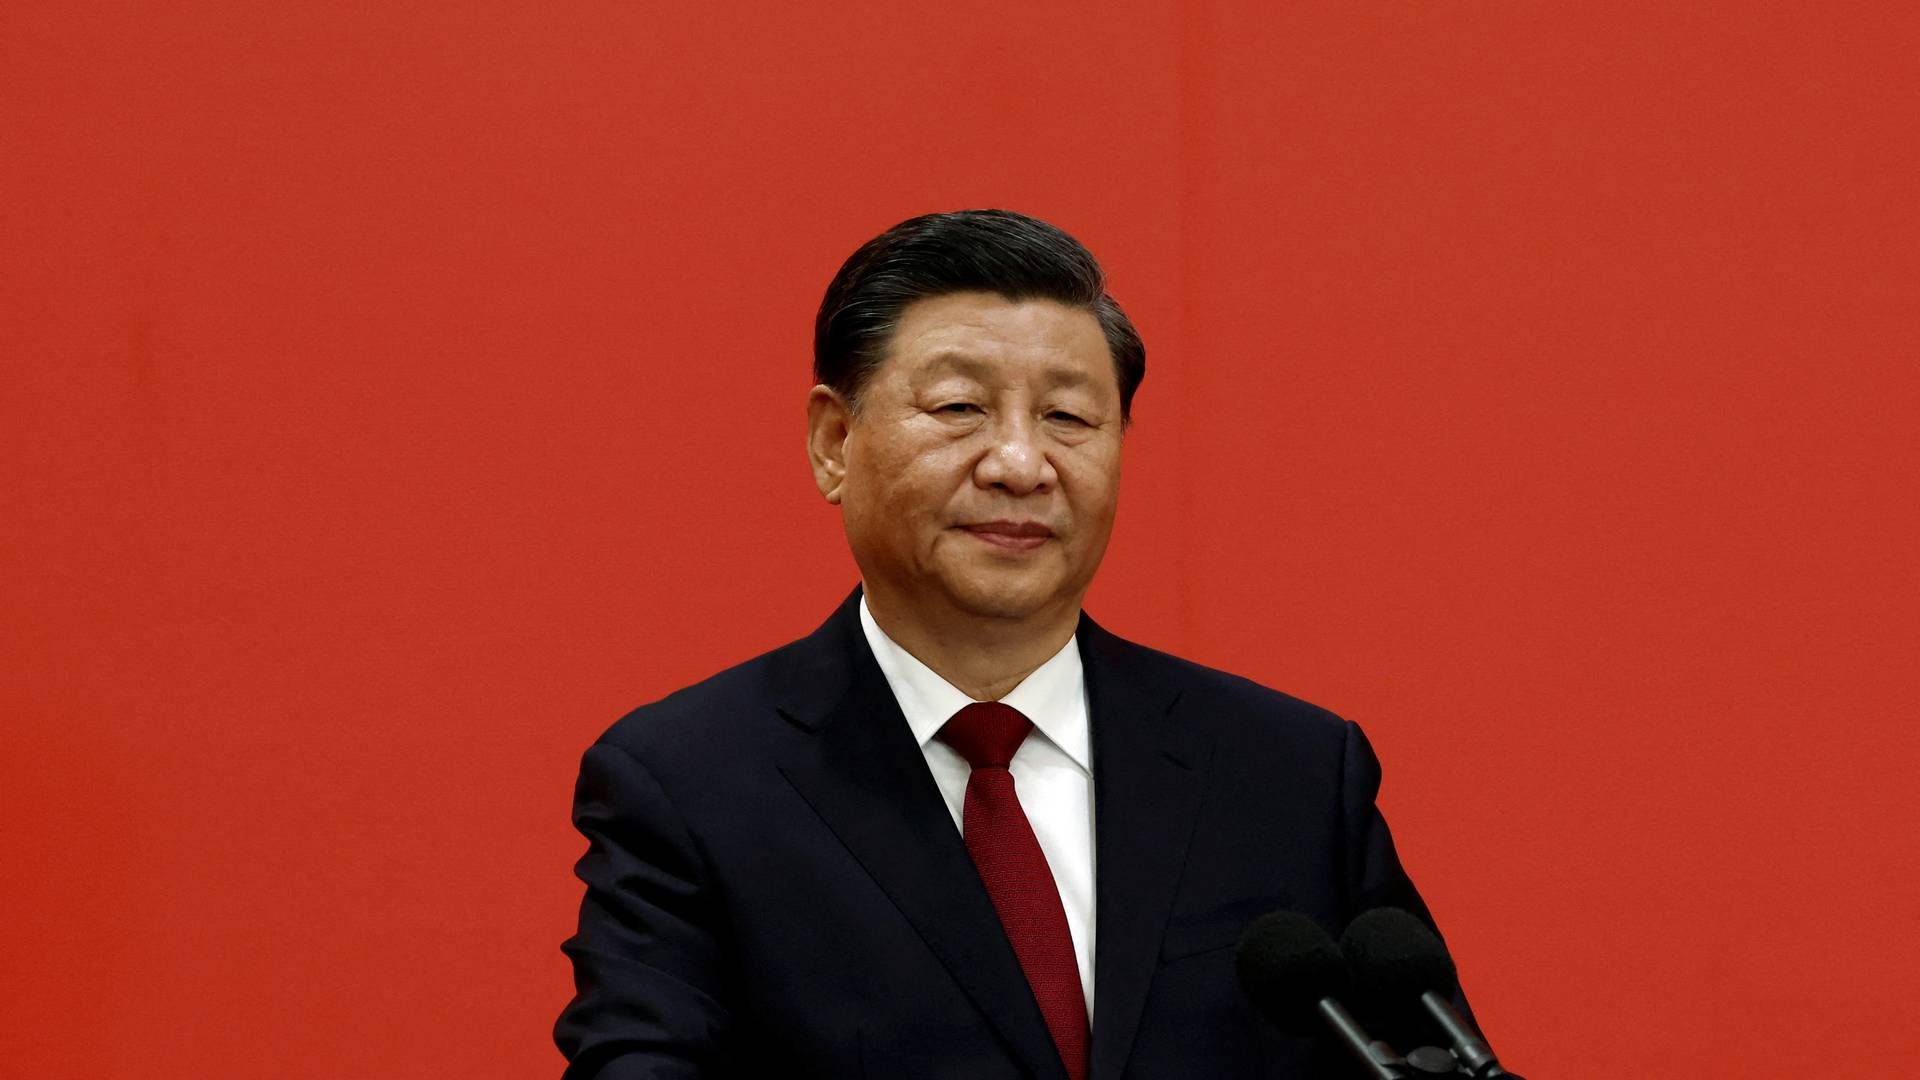 Kinas præsident Xi Jinping har ifølge avisen The Guardian bedt den kinesiske hær om at forberede sig på krig. Det tolker mediet som sabelraslen overfor Taiwan. | Foto: Tingshu Wang/Reuters/Ritzau Scanpix